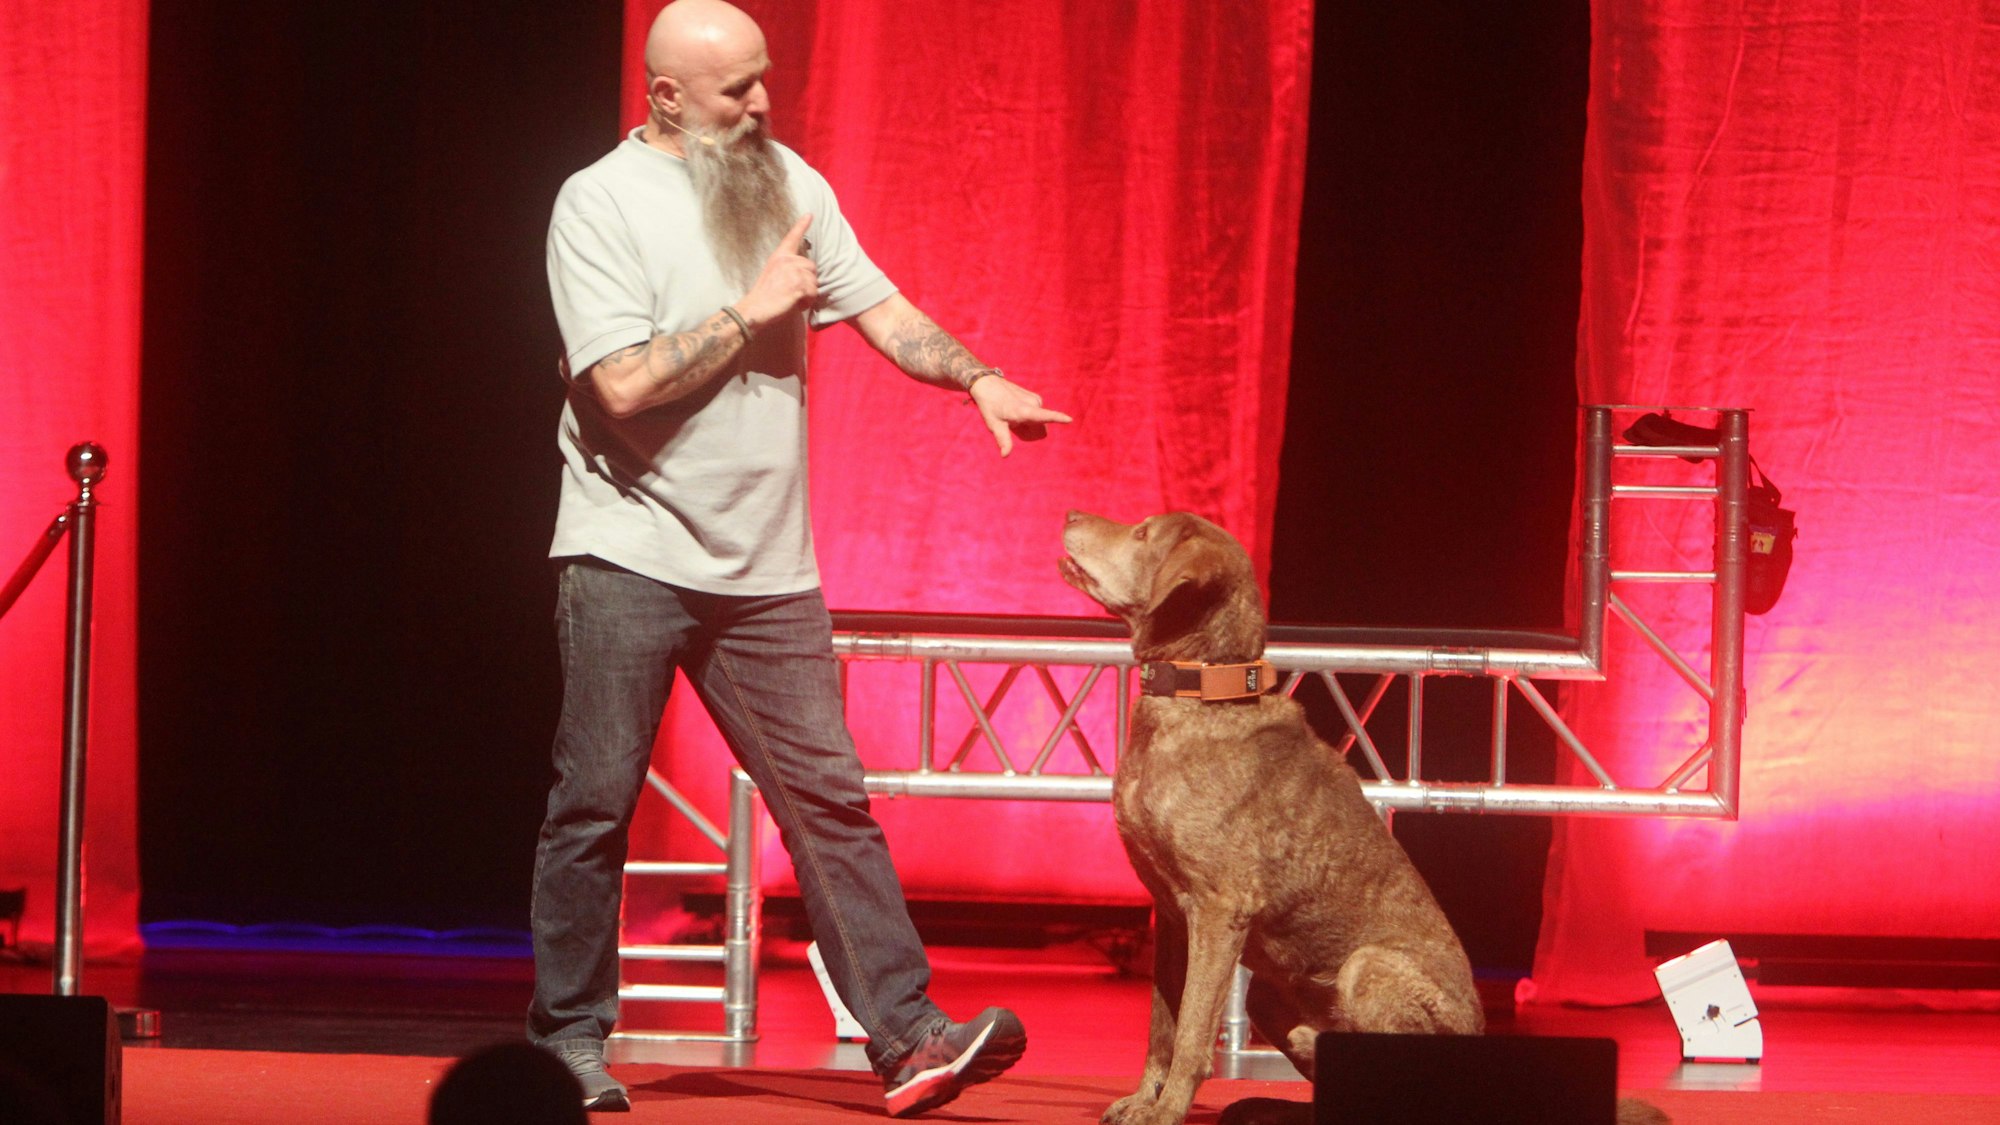 Auf der Bühne sitzt der große, braune Hund Dakota vor dem Hunde-Experten Holger Schüler.